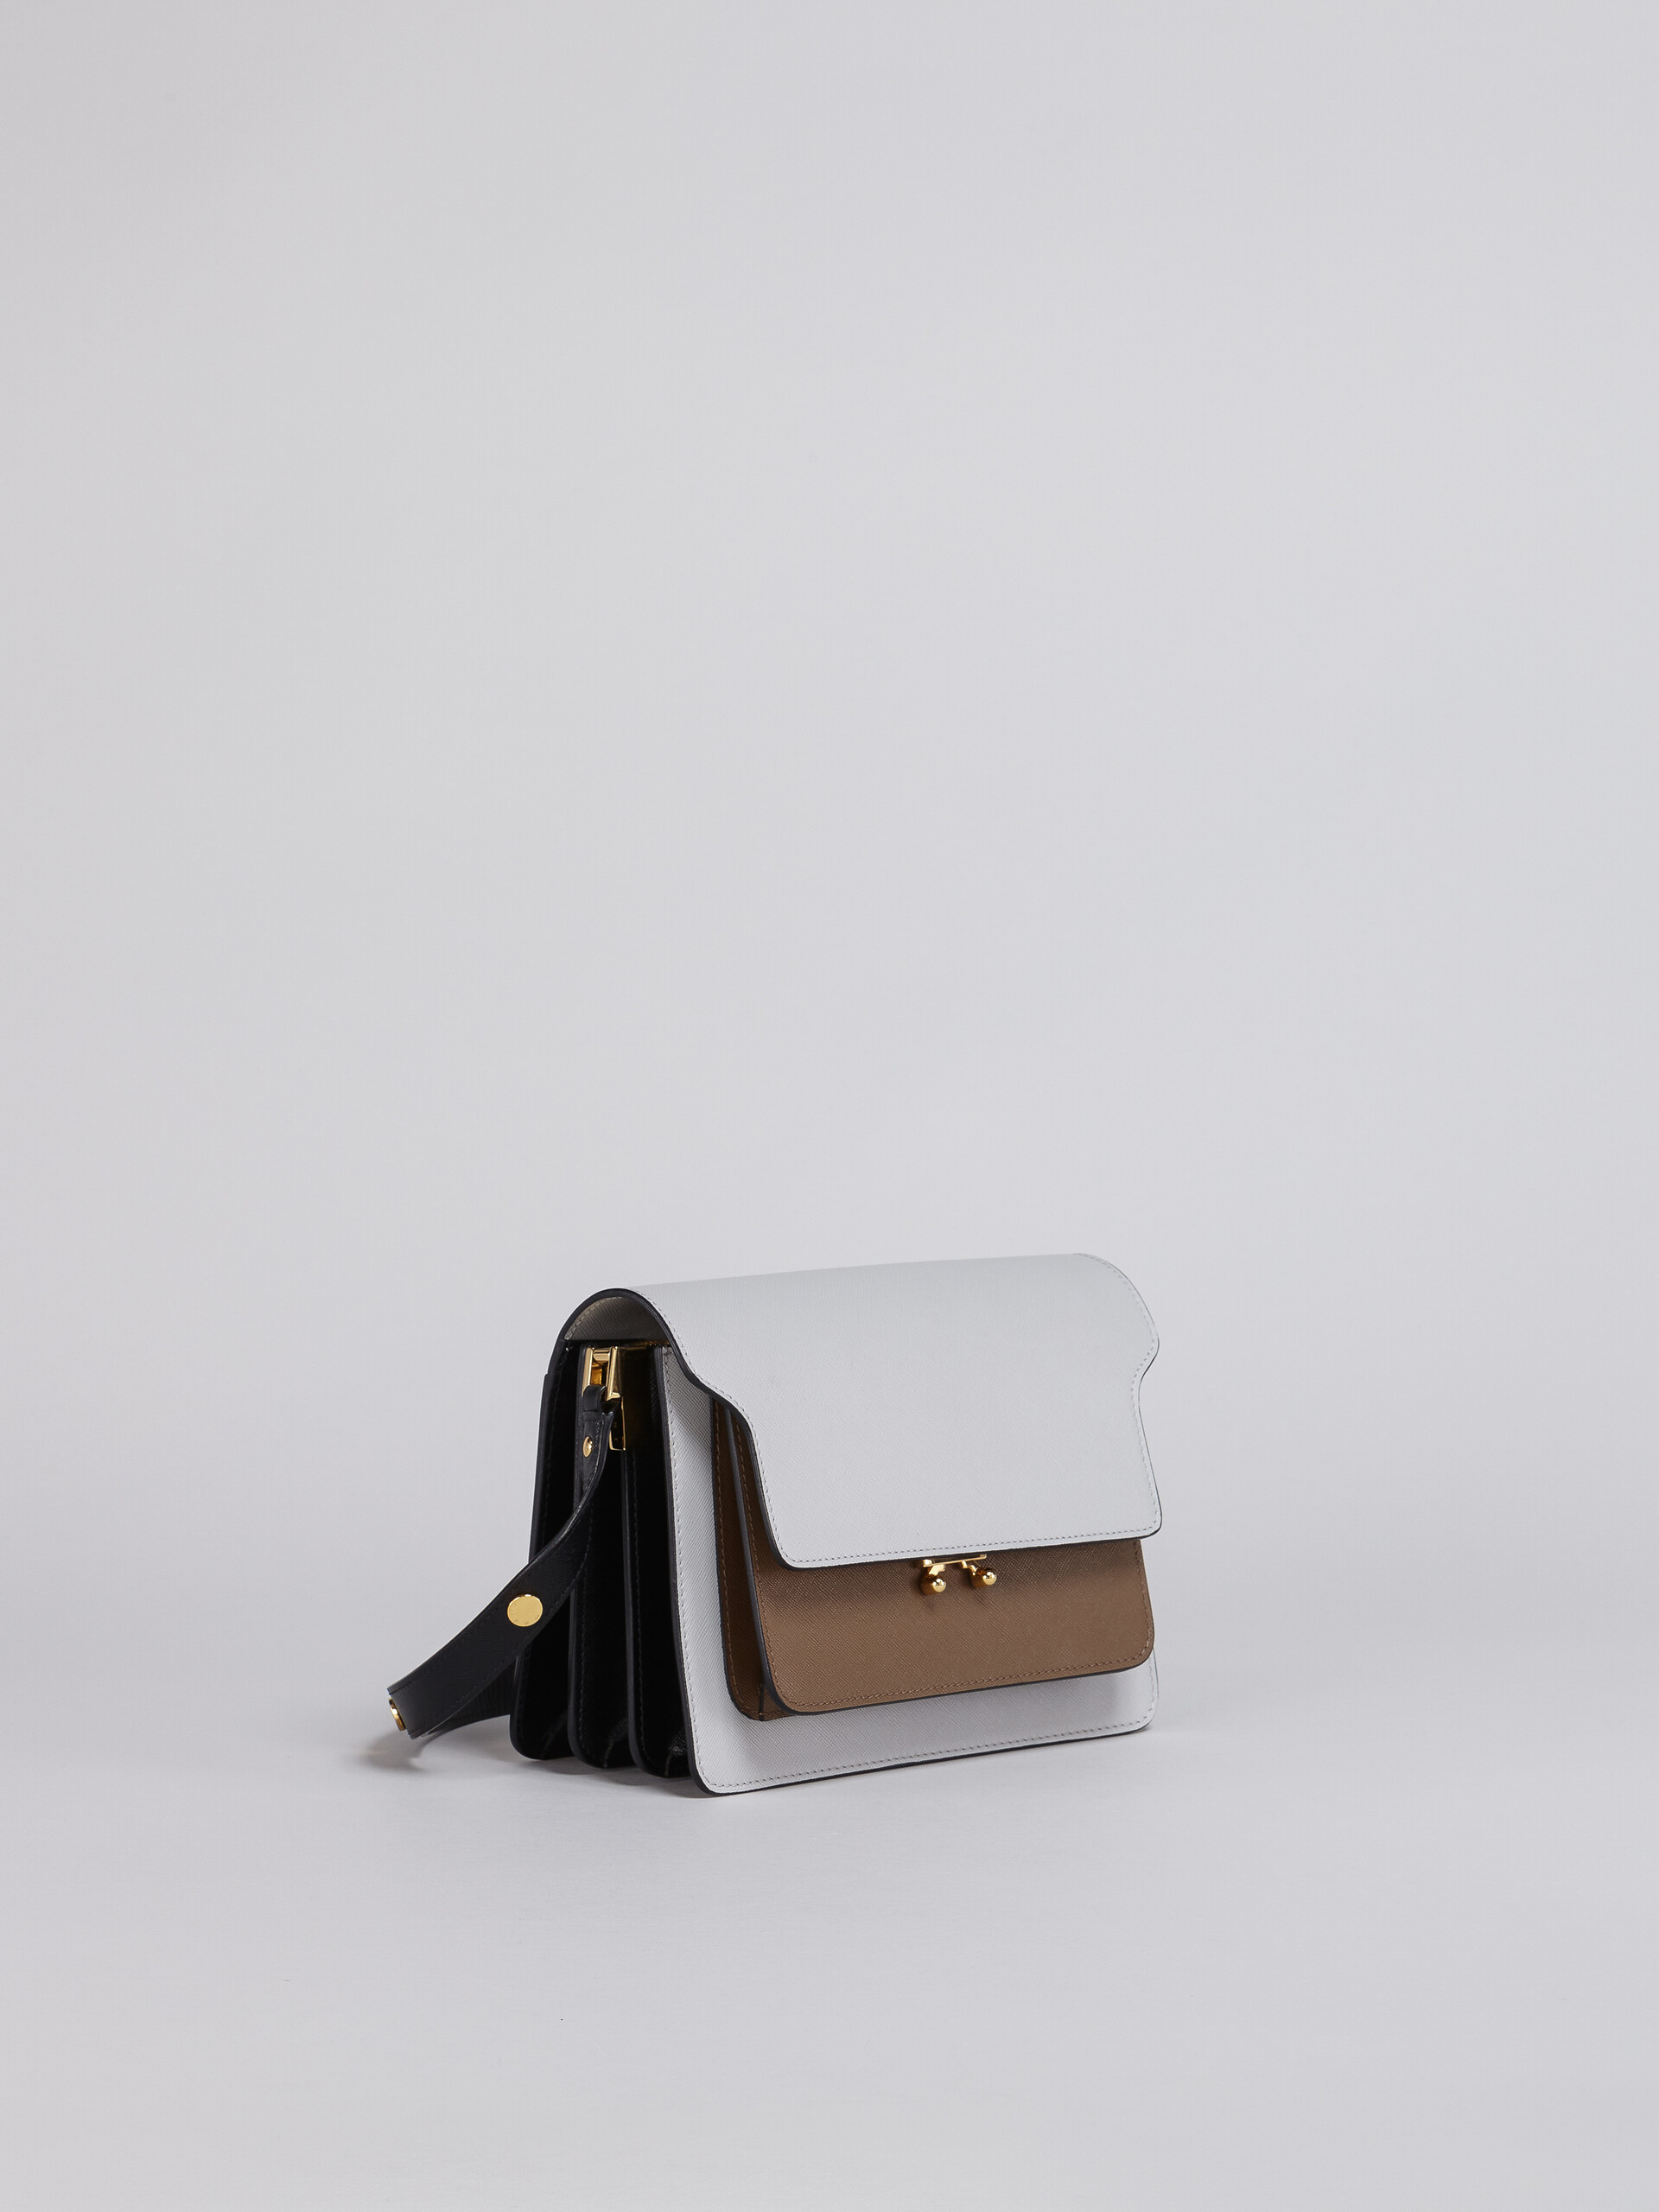 TRUNK bag in vitello saffiano grigio marrone e nero - Borse a spalla - Image 5